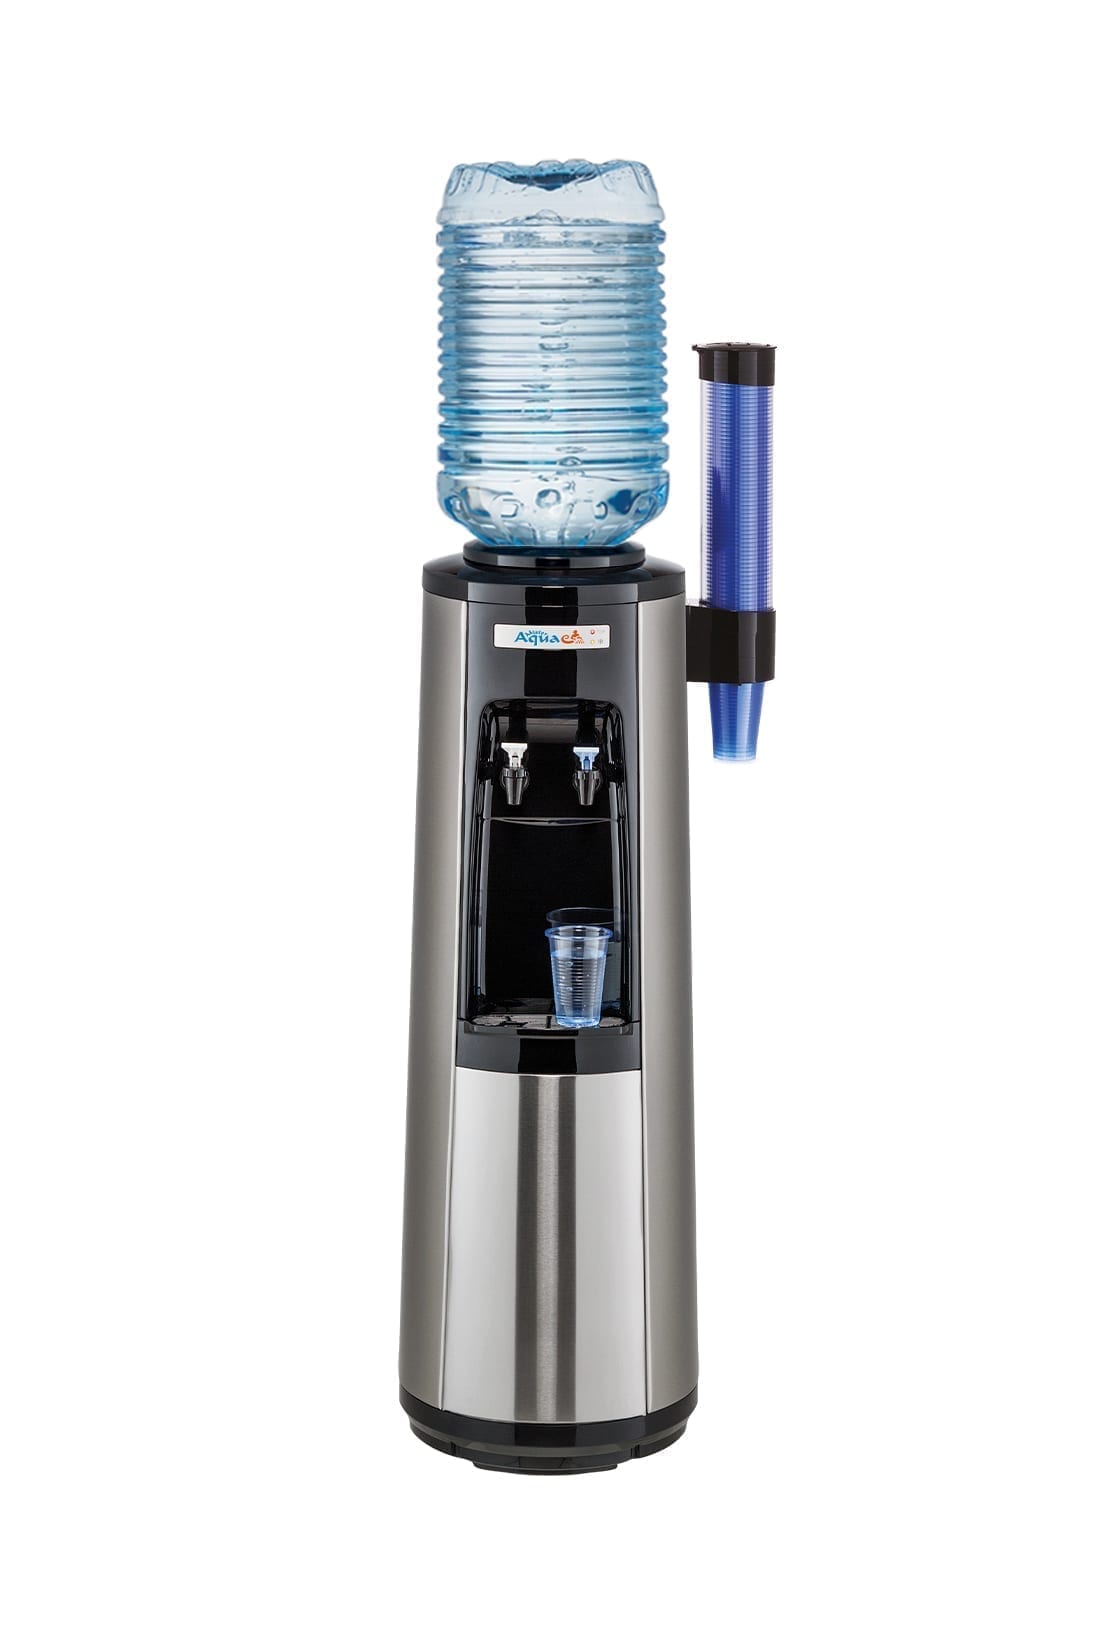 Ocean-flessenwaterkoeler-18L